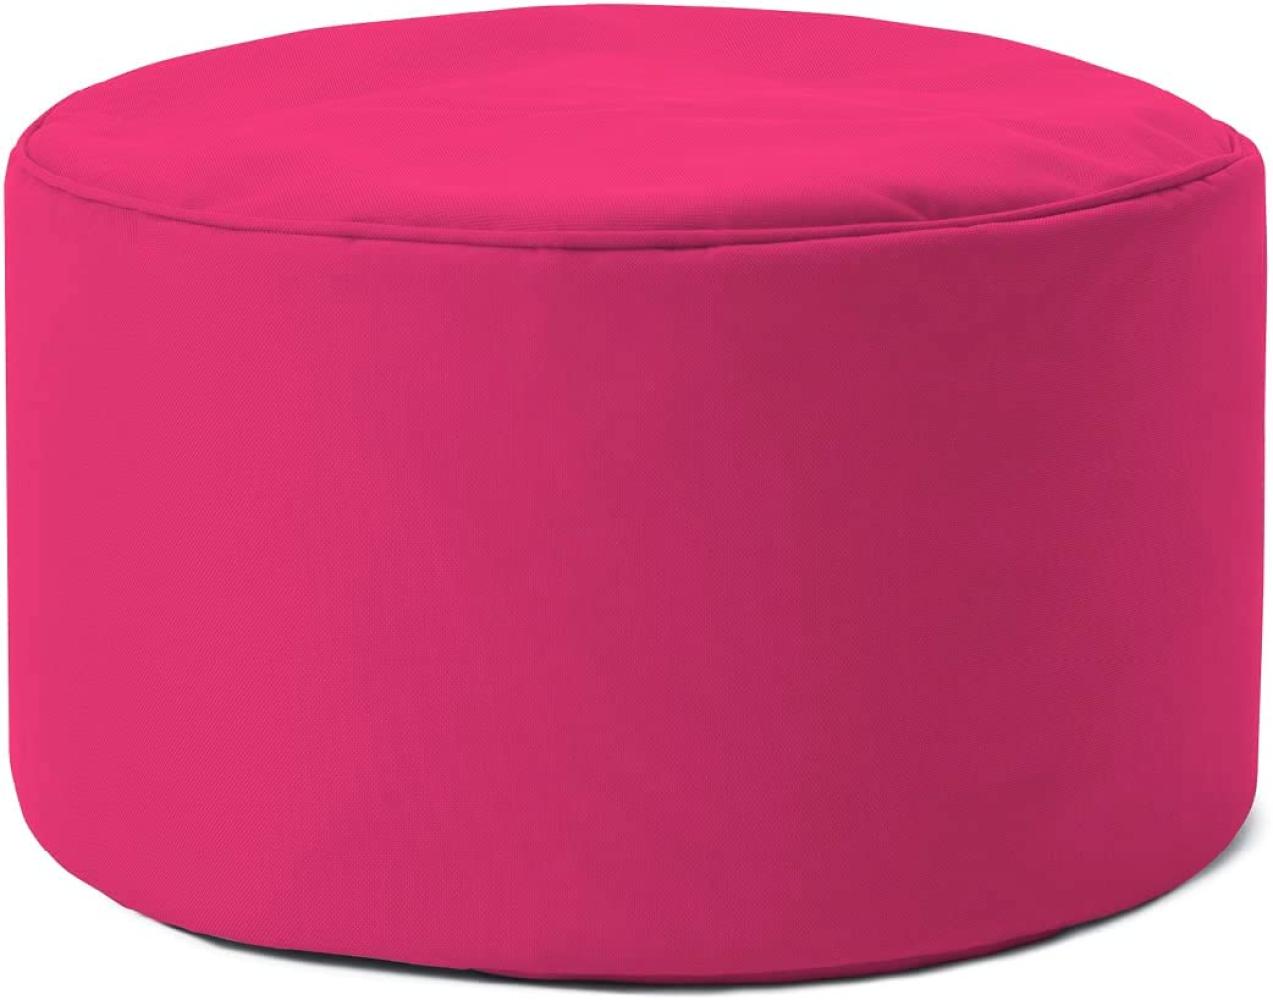 Lumaland Indoor Outdoor Sitzsack Hocker 25 x 45 cm - Runder Sitzpouf, Sitzsack Bodenkissen, Fussablage, Bean Bag Pouf - Wasserabweisend - Pflegeleicht - ideal für Kinder und Erwachsene - Pink Bild 1